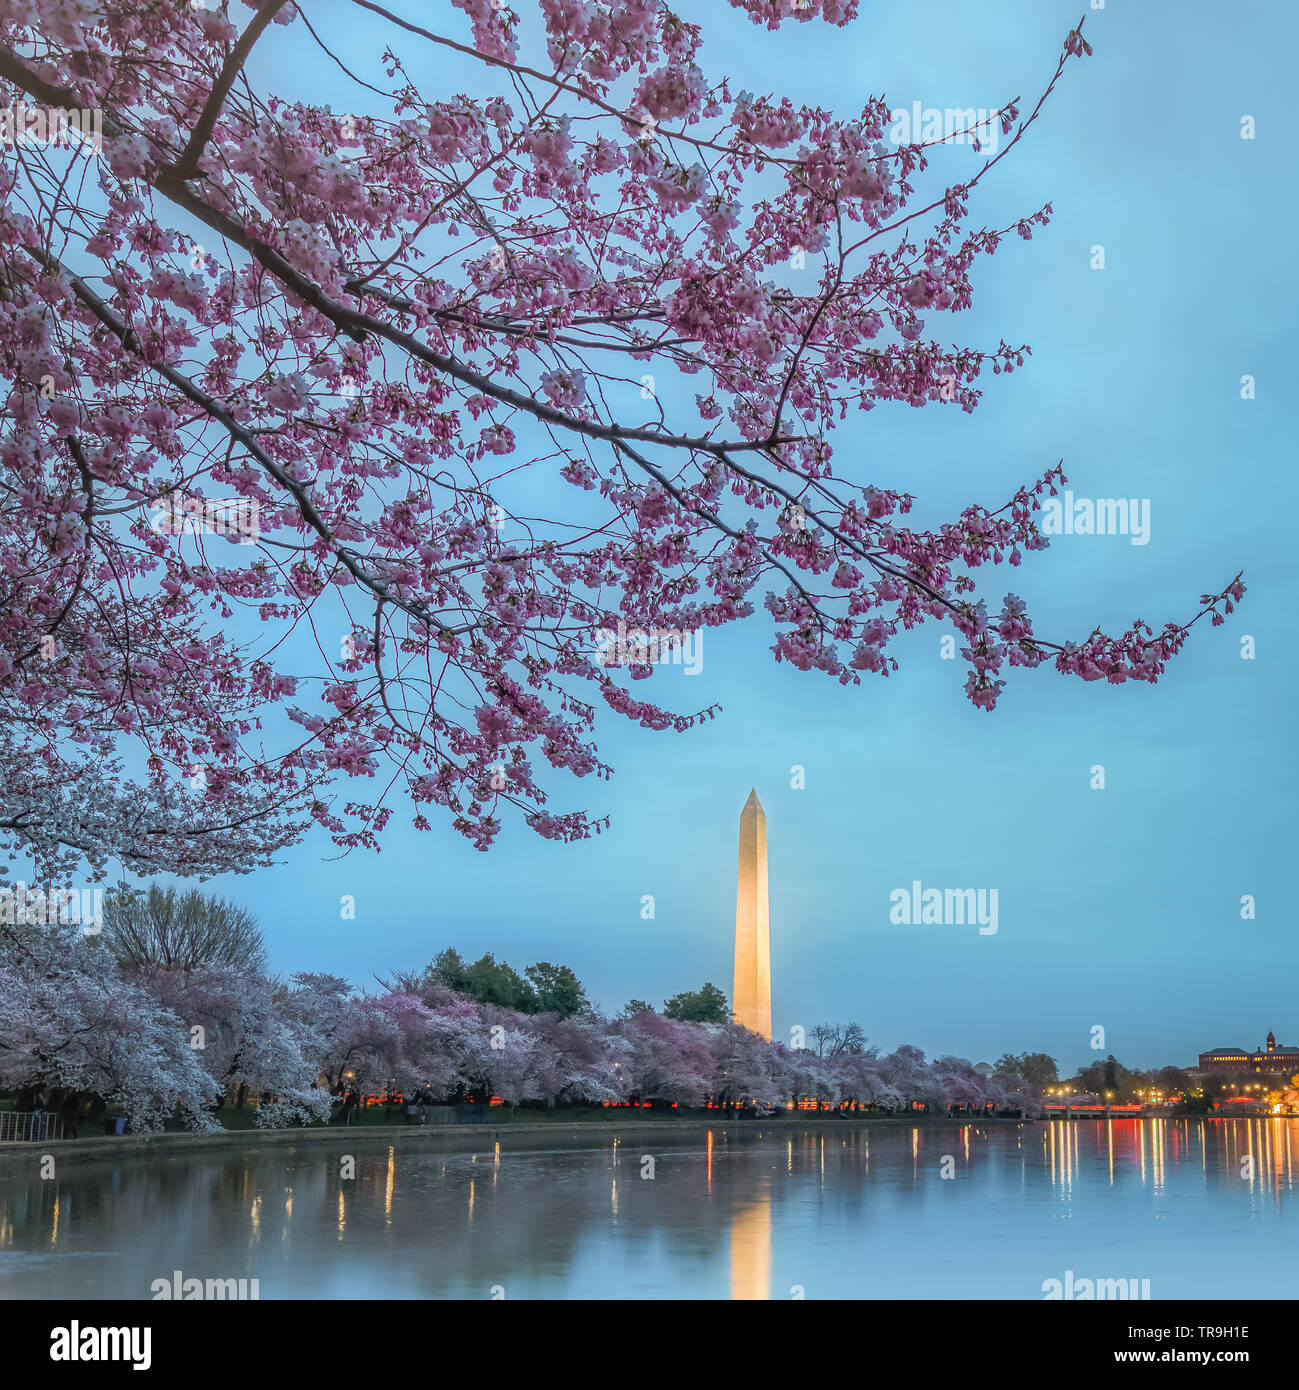 Il Monumento a Washington incorniciato da fiori di ciliegio e riflessa nel bacino di marea in notturna a Washington DC, Stati Uniti d'America. Foto Stock